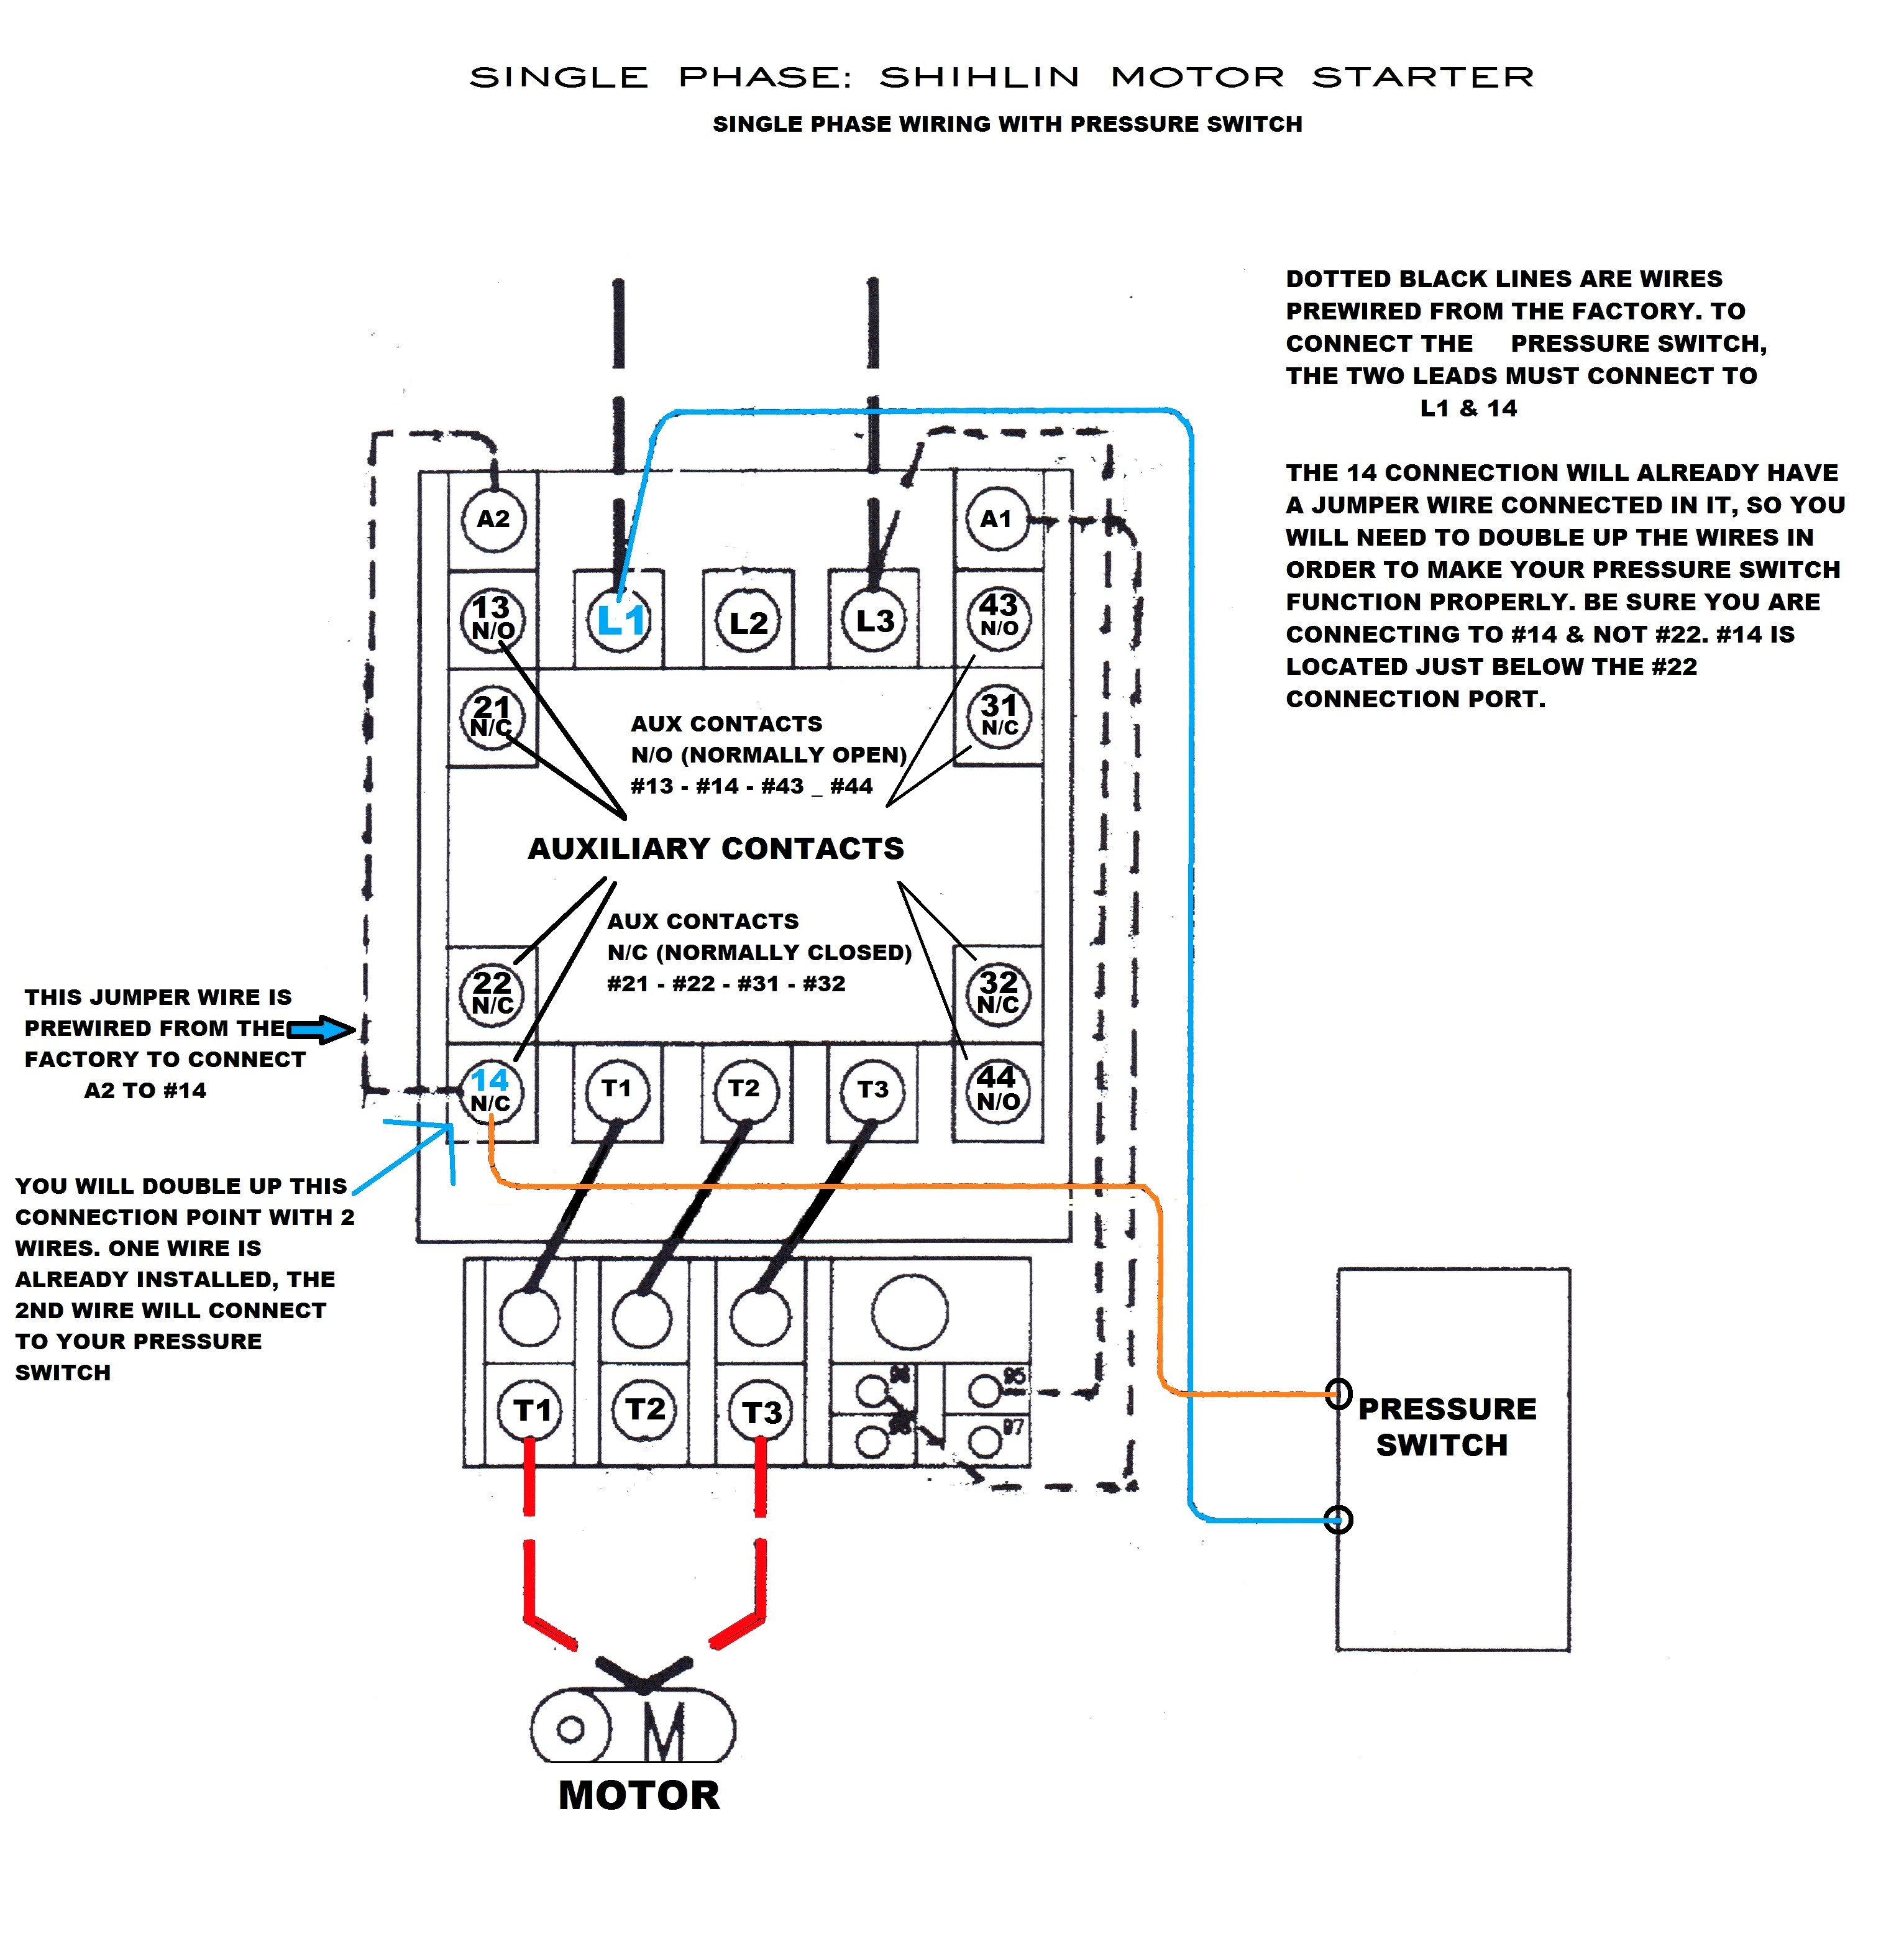 Single Phase Motor Starter Wiring Diagram 240v Single Phase Motor Wiring Diagram Diagrams Database Starter Of Single Phase Motor Starter Wiring Diagram